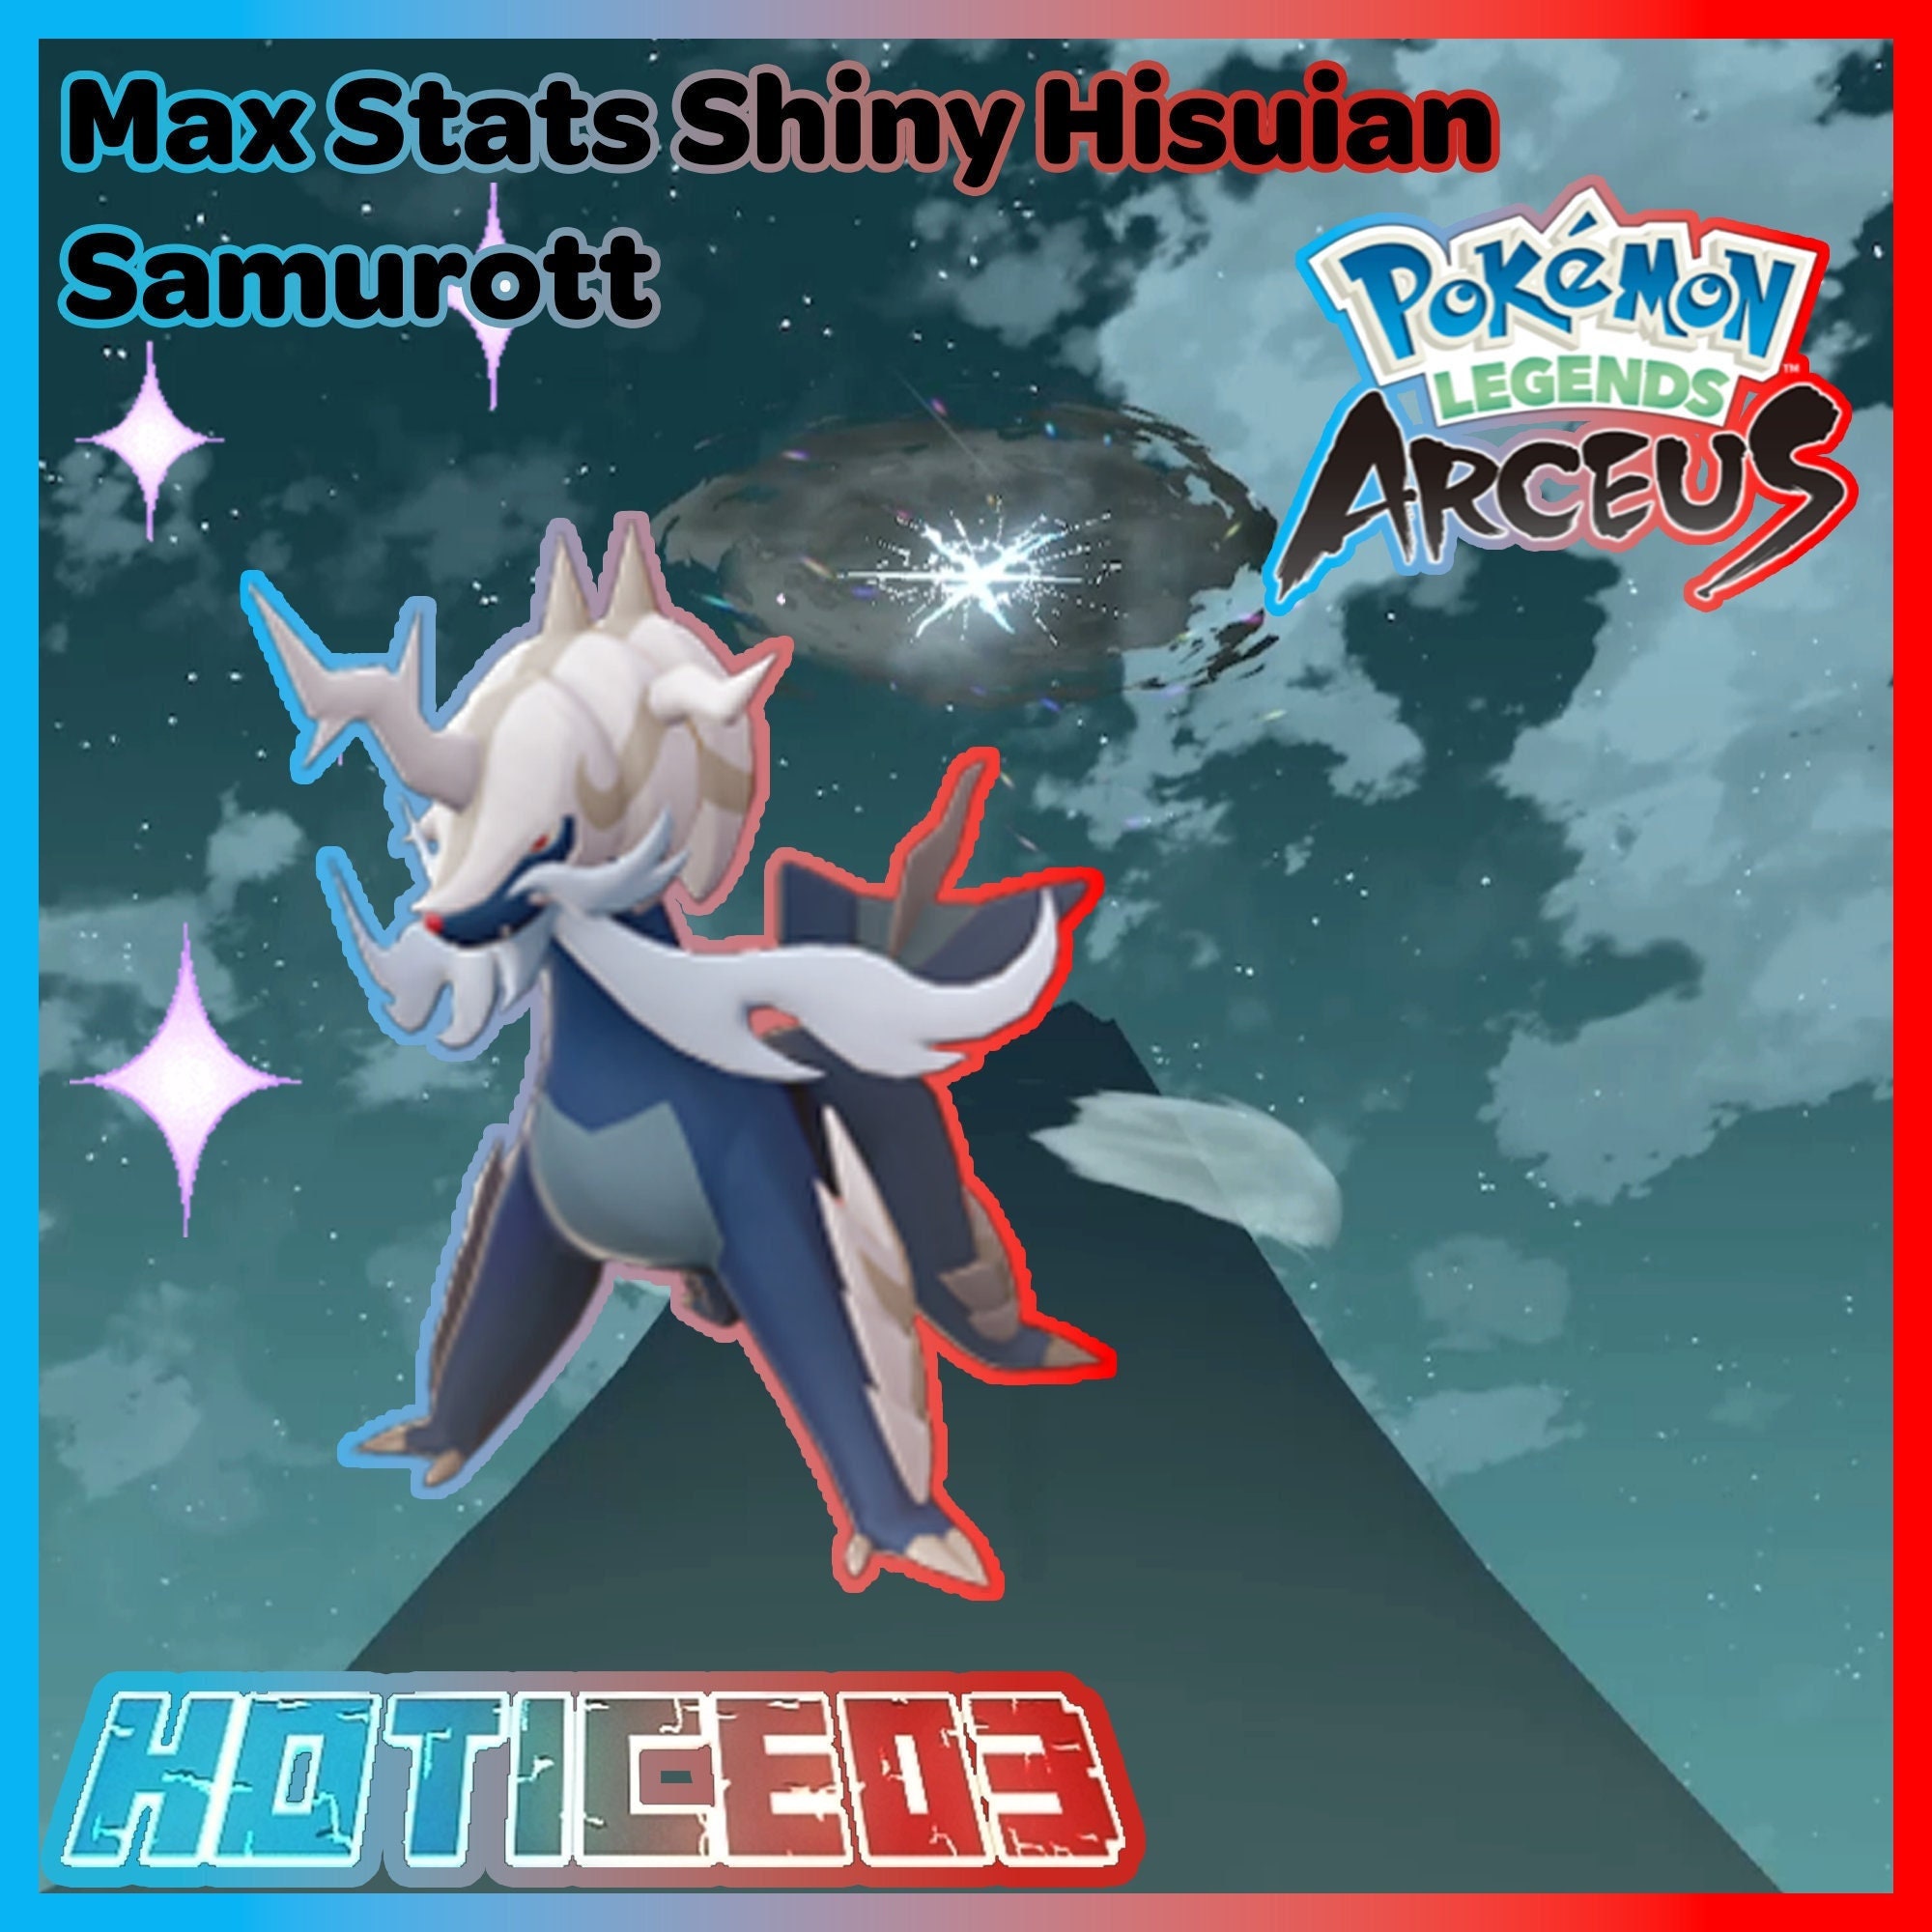 Como conseguir o Shiny Hisuian Samurott em Pokémon GO